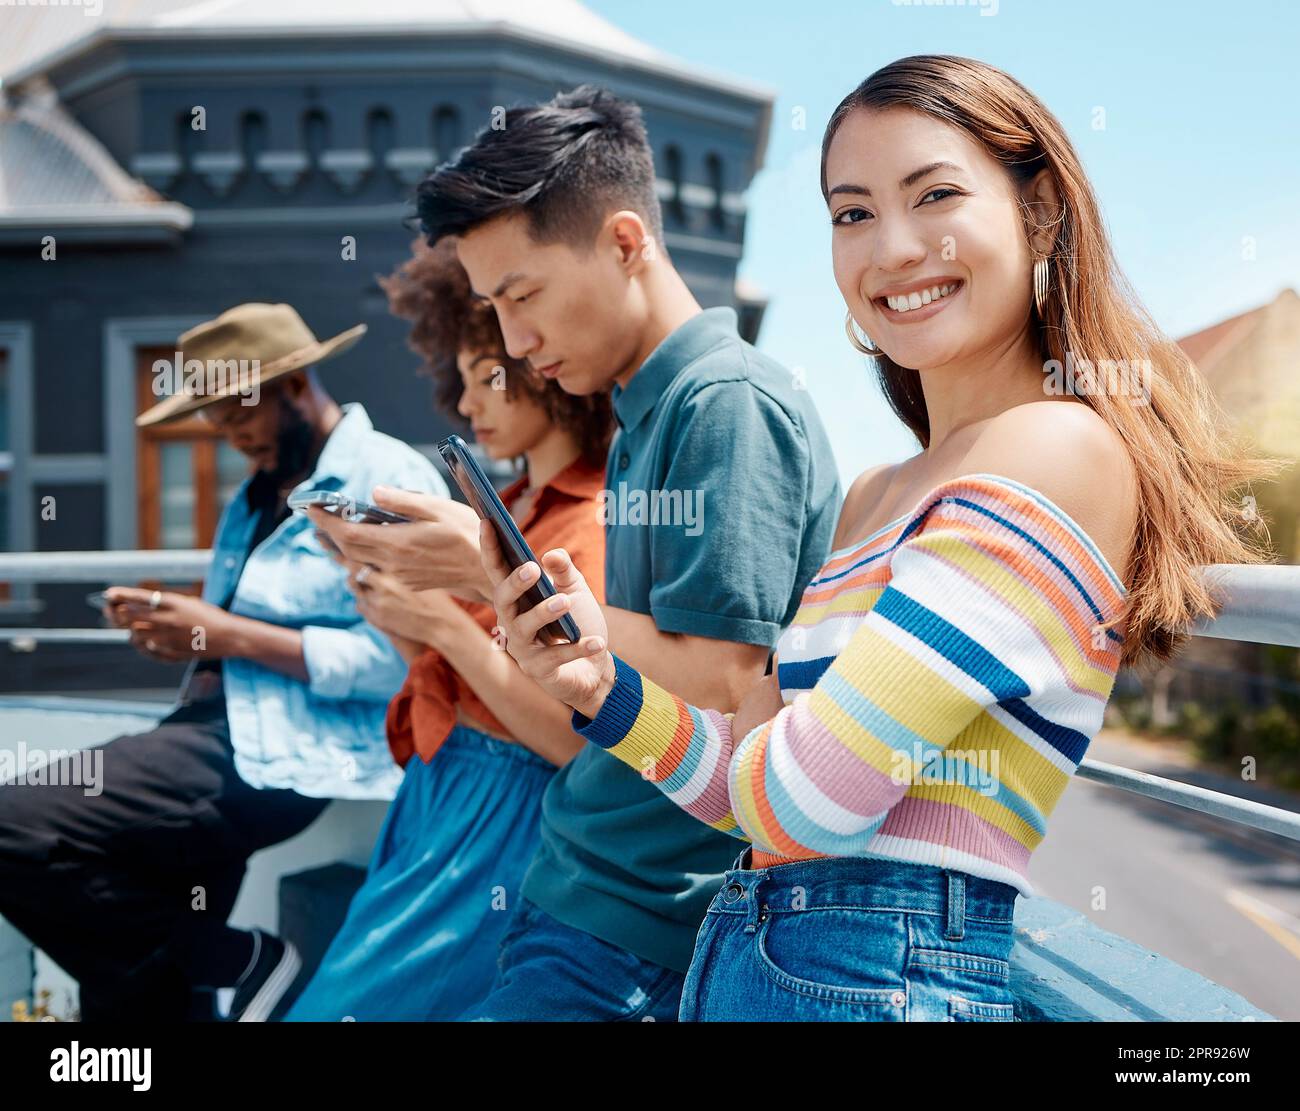 Porträt einer wunderschönen jungen lächelnden asiatischen Frau, die mit Freunden draußen steht und ihr Handy benutzt, um im Internet zu surfen. Gruppe verschiedener Millennials, die ihre Telefone nutzen, um sich mit Social medi zu verbinden Stockfoto